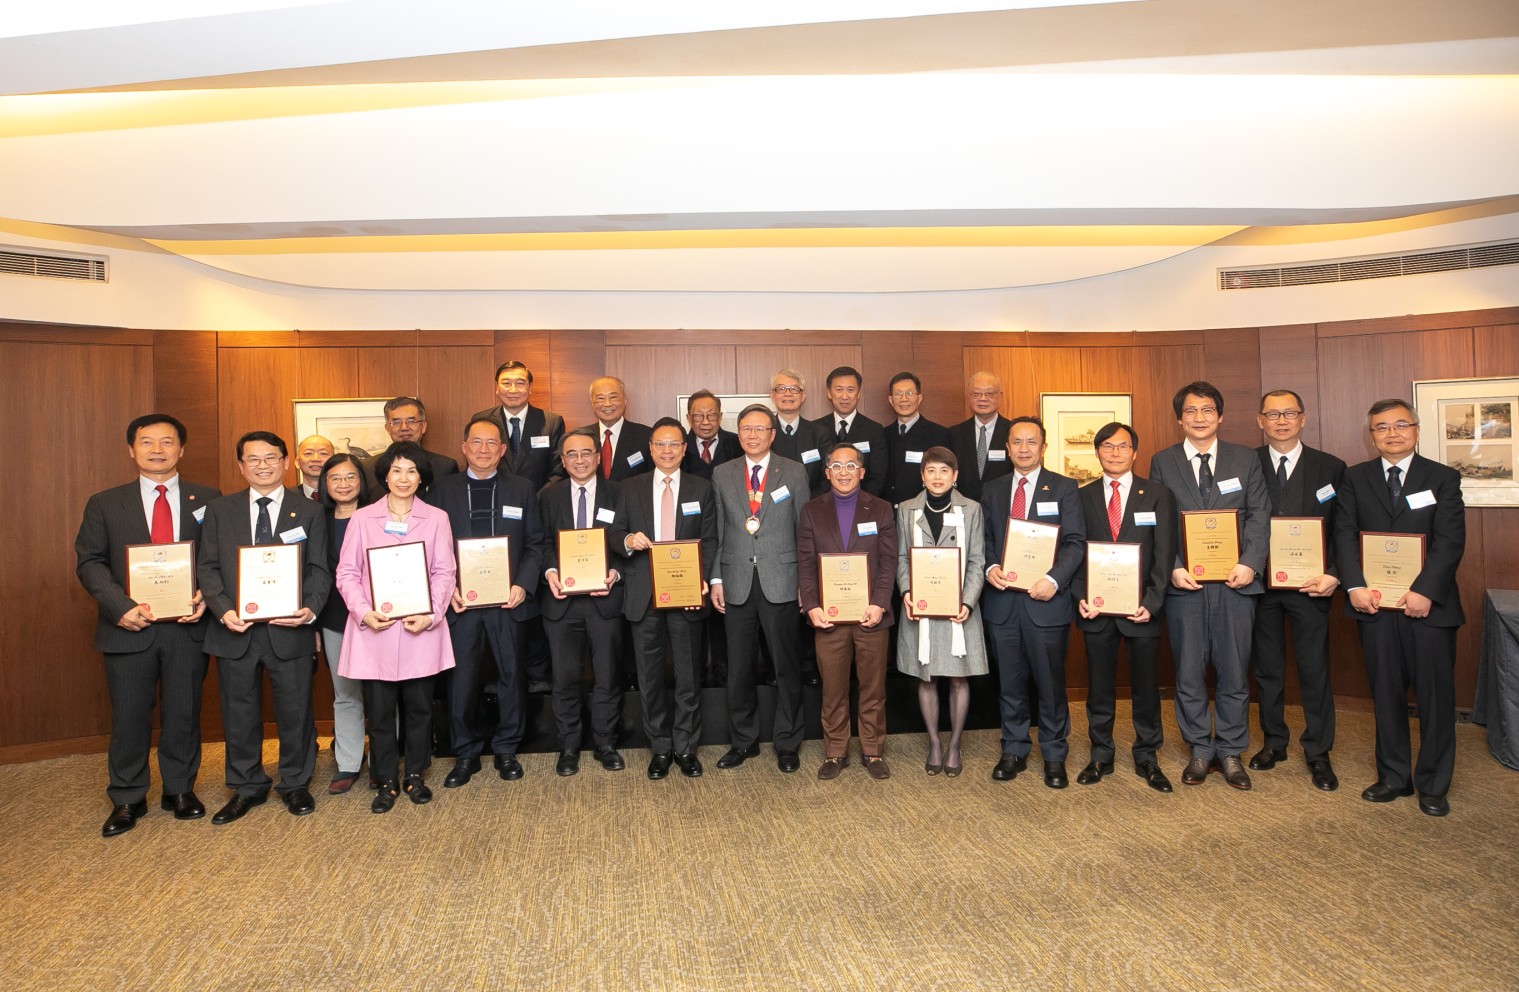 秦泗釗教授（前排左一）及鄺得互教授（前排右四）同為2023年度香港工程科學院的13位新任院士之一，他們均以出色的專業知識為科學及工程學領域作出重大貢獻。